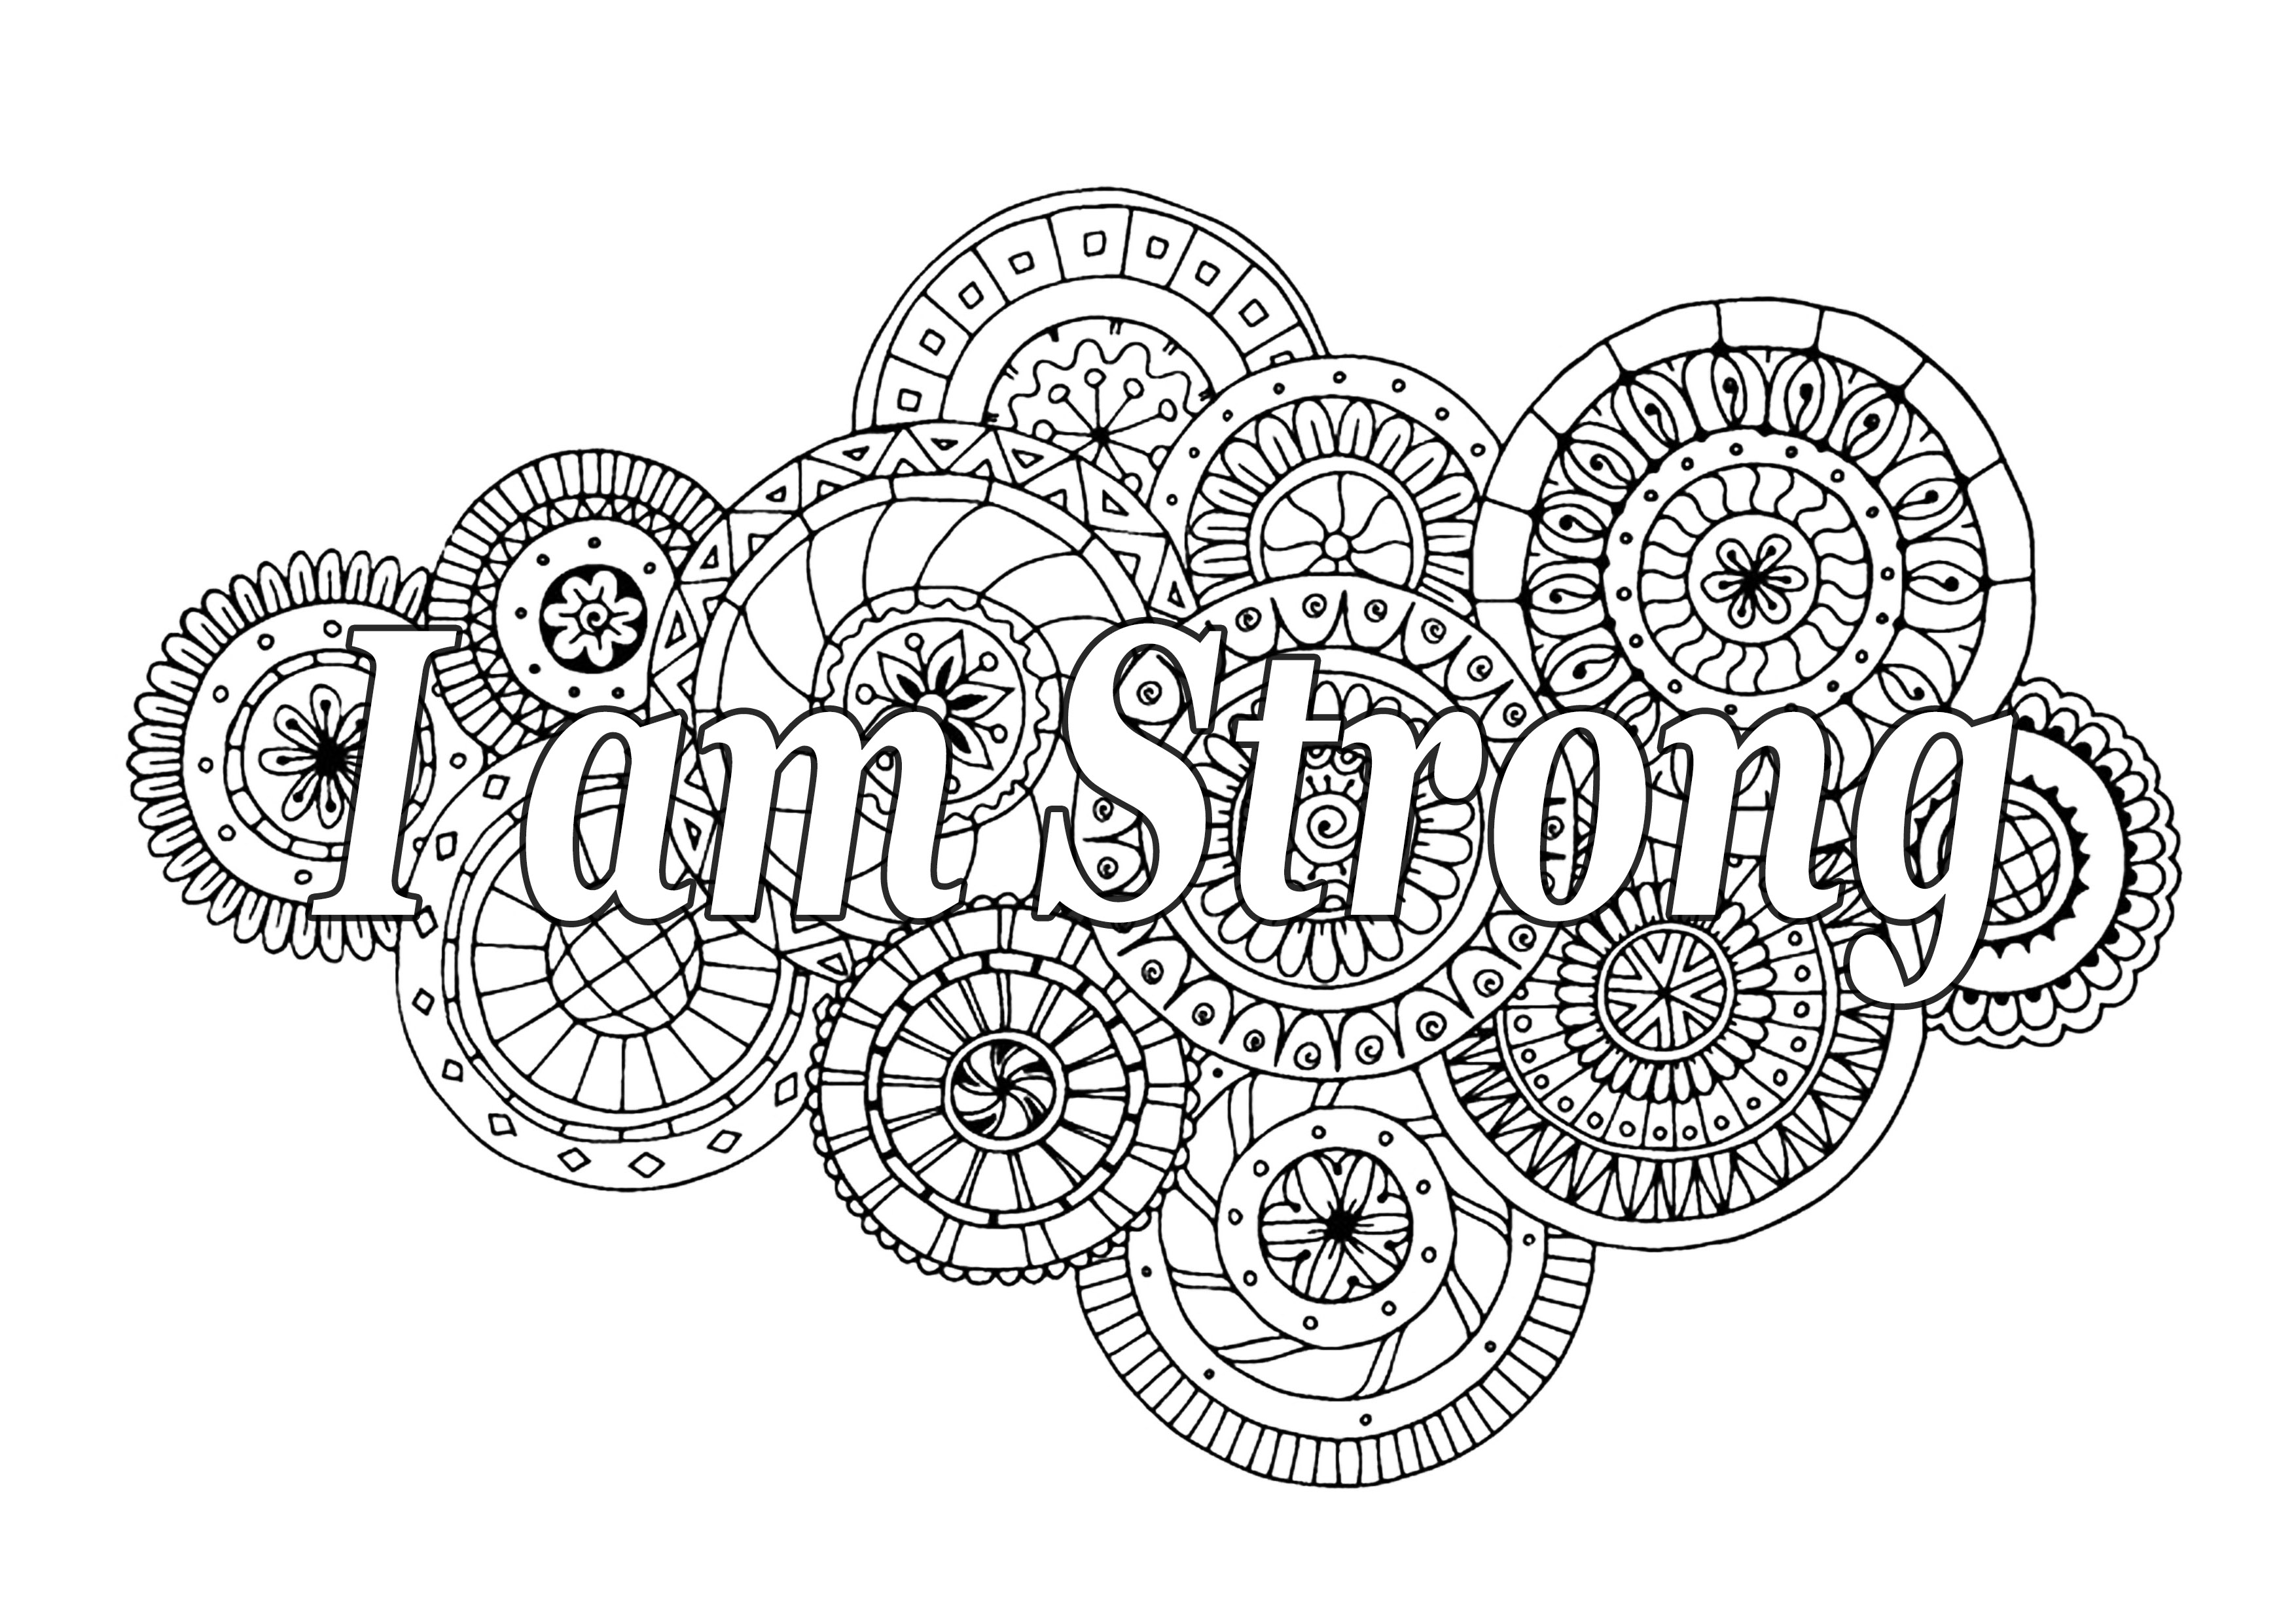 I am strong (Je suis fort). Une citation motivante, avec de beaux mandalas en arrière-plan